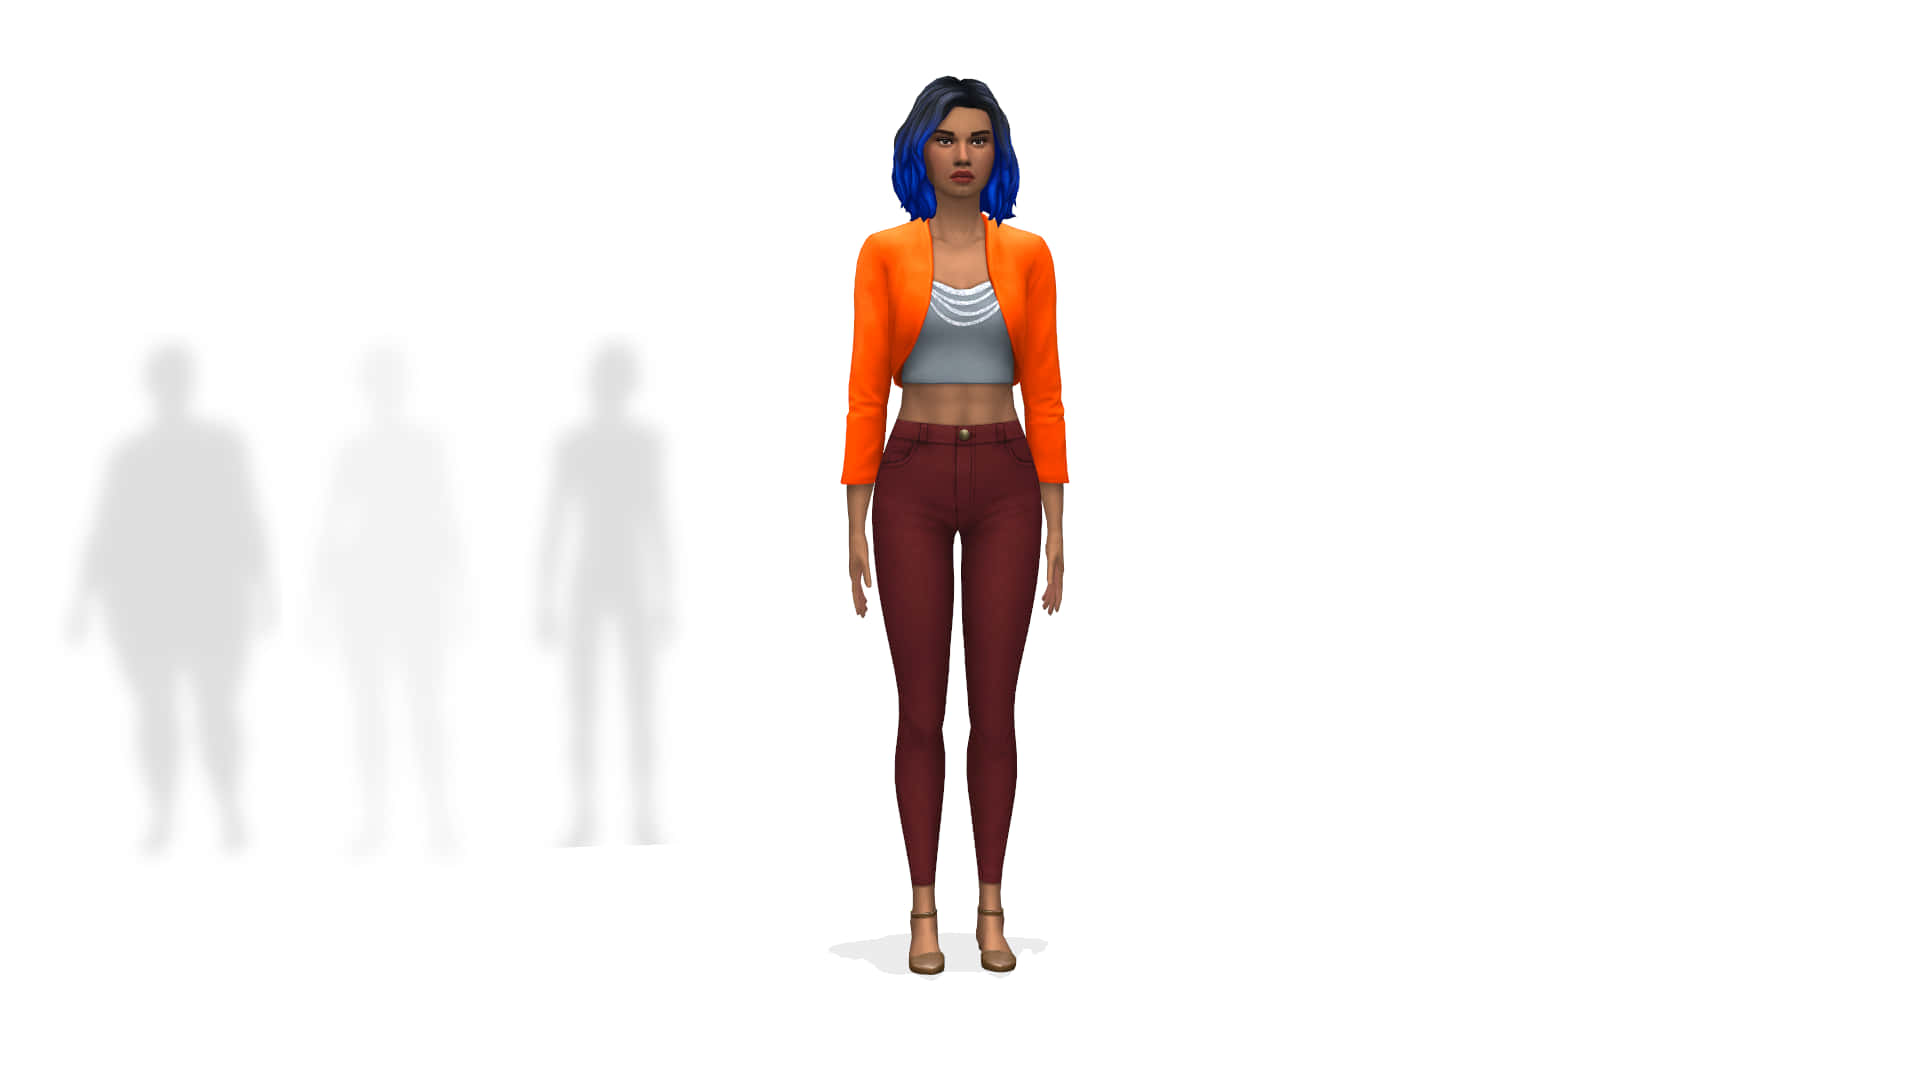 Socialsimulationspel Sims 4 Cas-bakgrund.